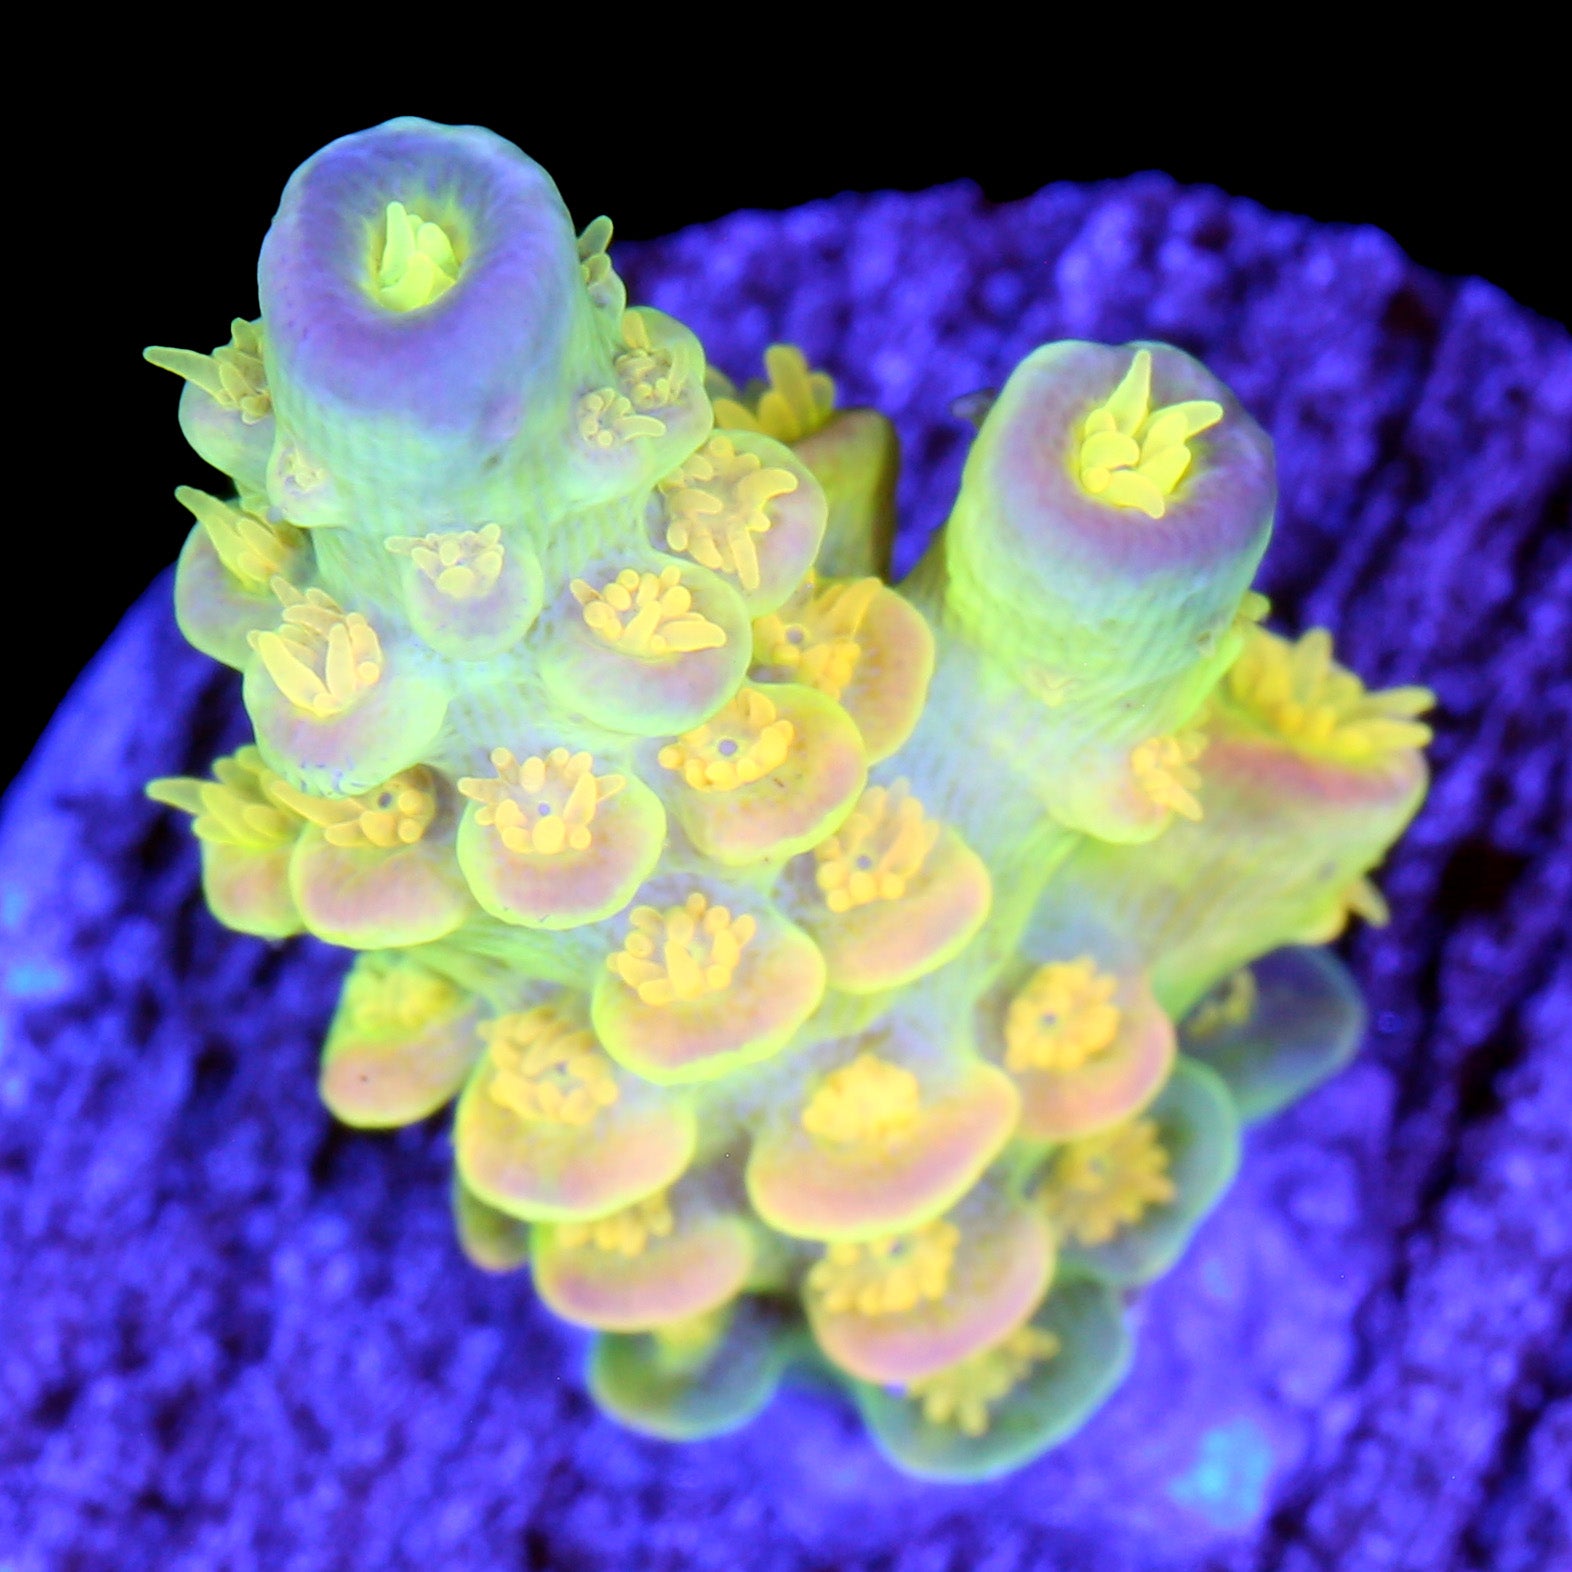 Walt Disney Tenuis Acropora Coral | Buy Live Coral for Sale | Vivid ...